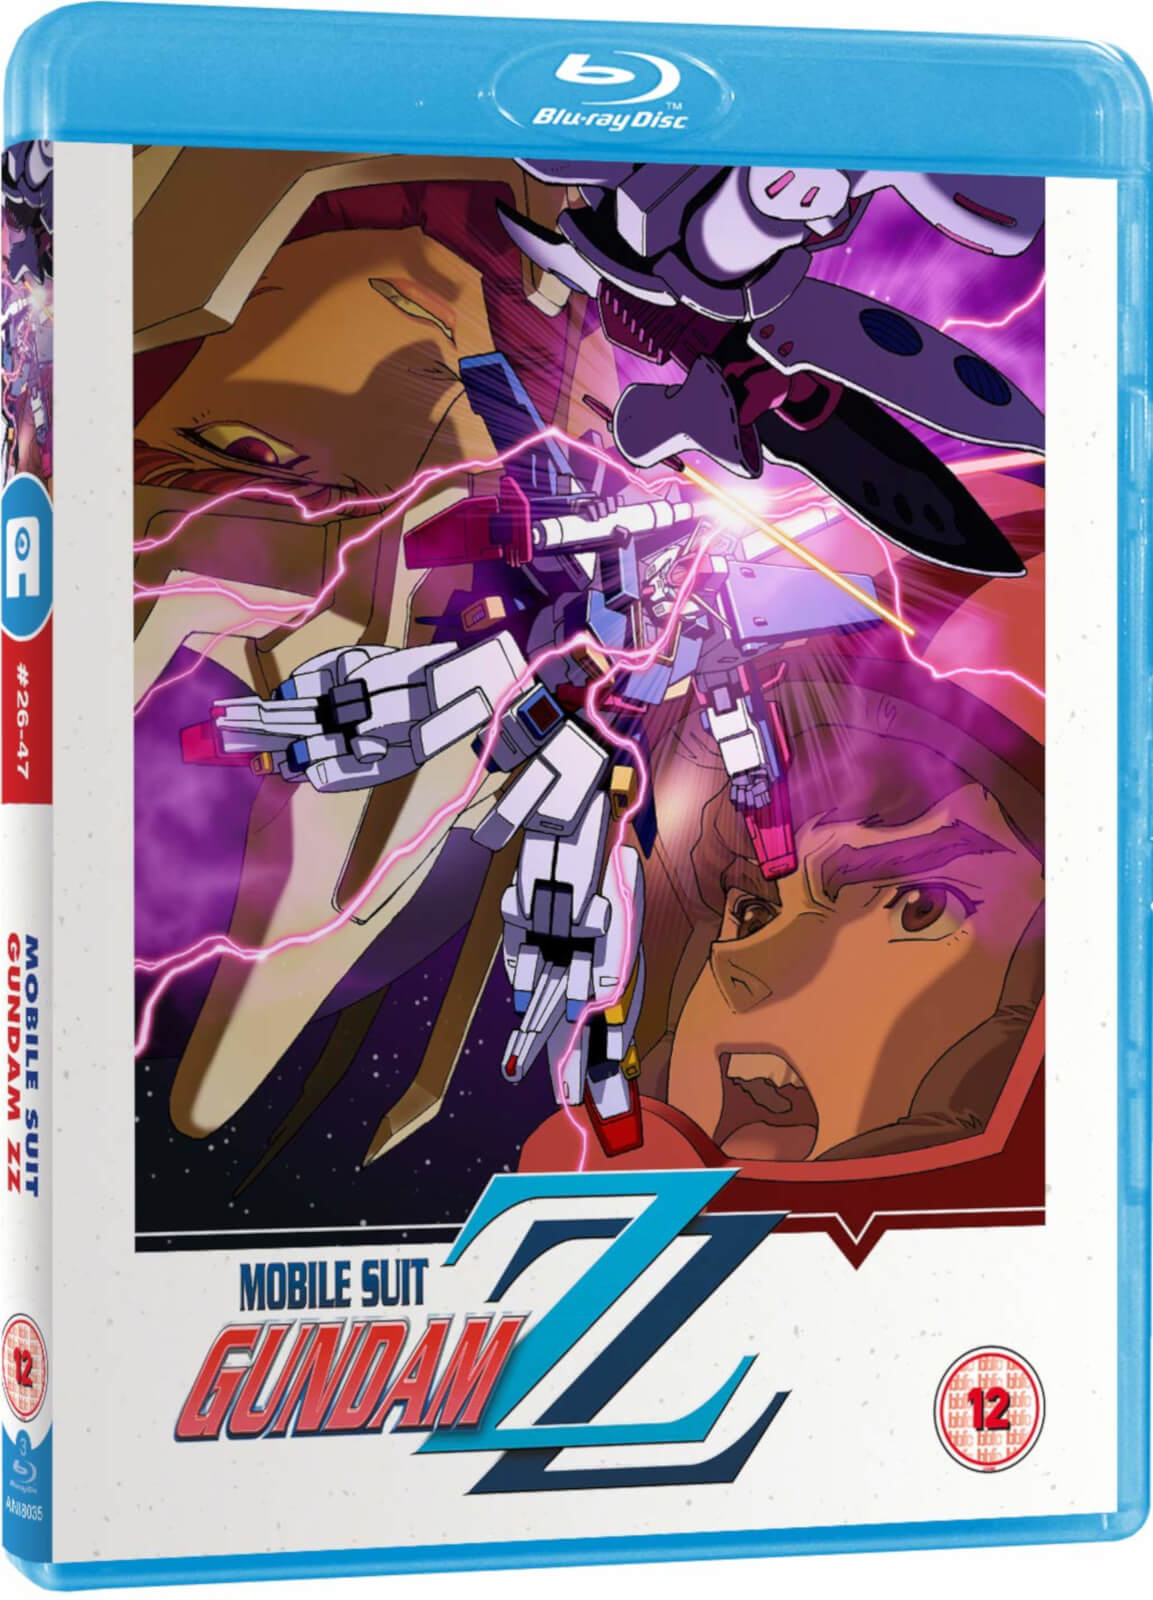 Mobile Suit Gundam ZZ Part 2